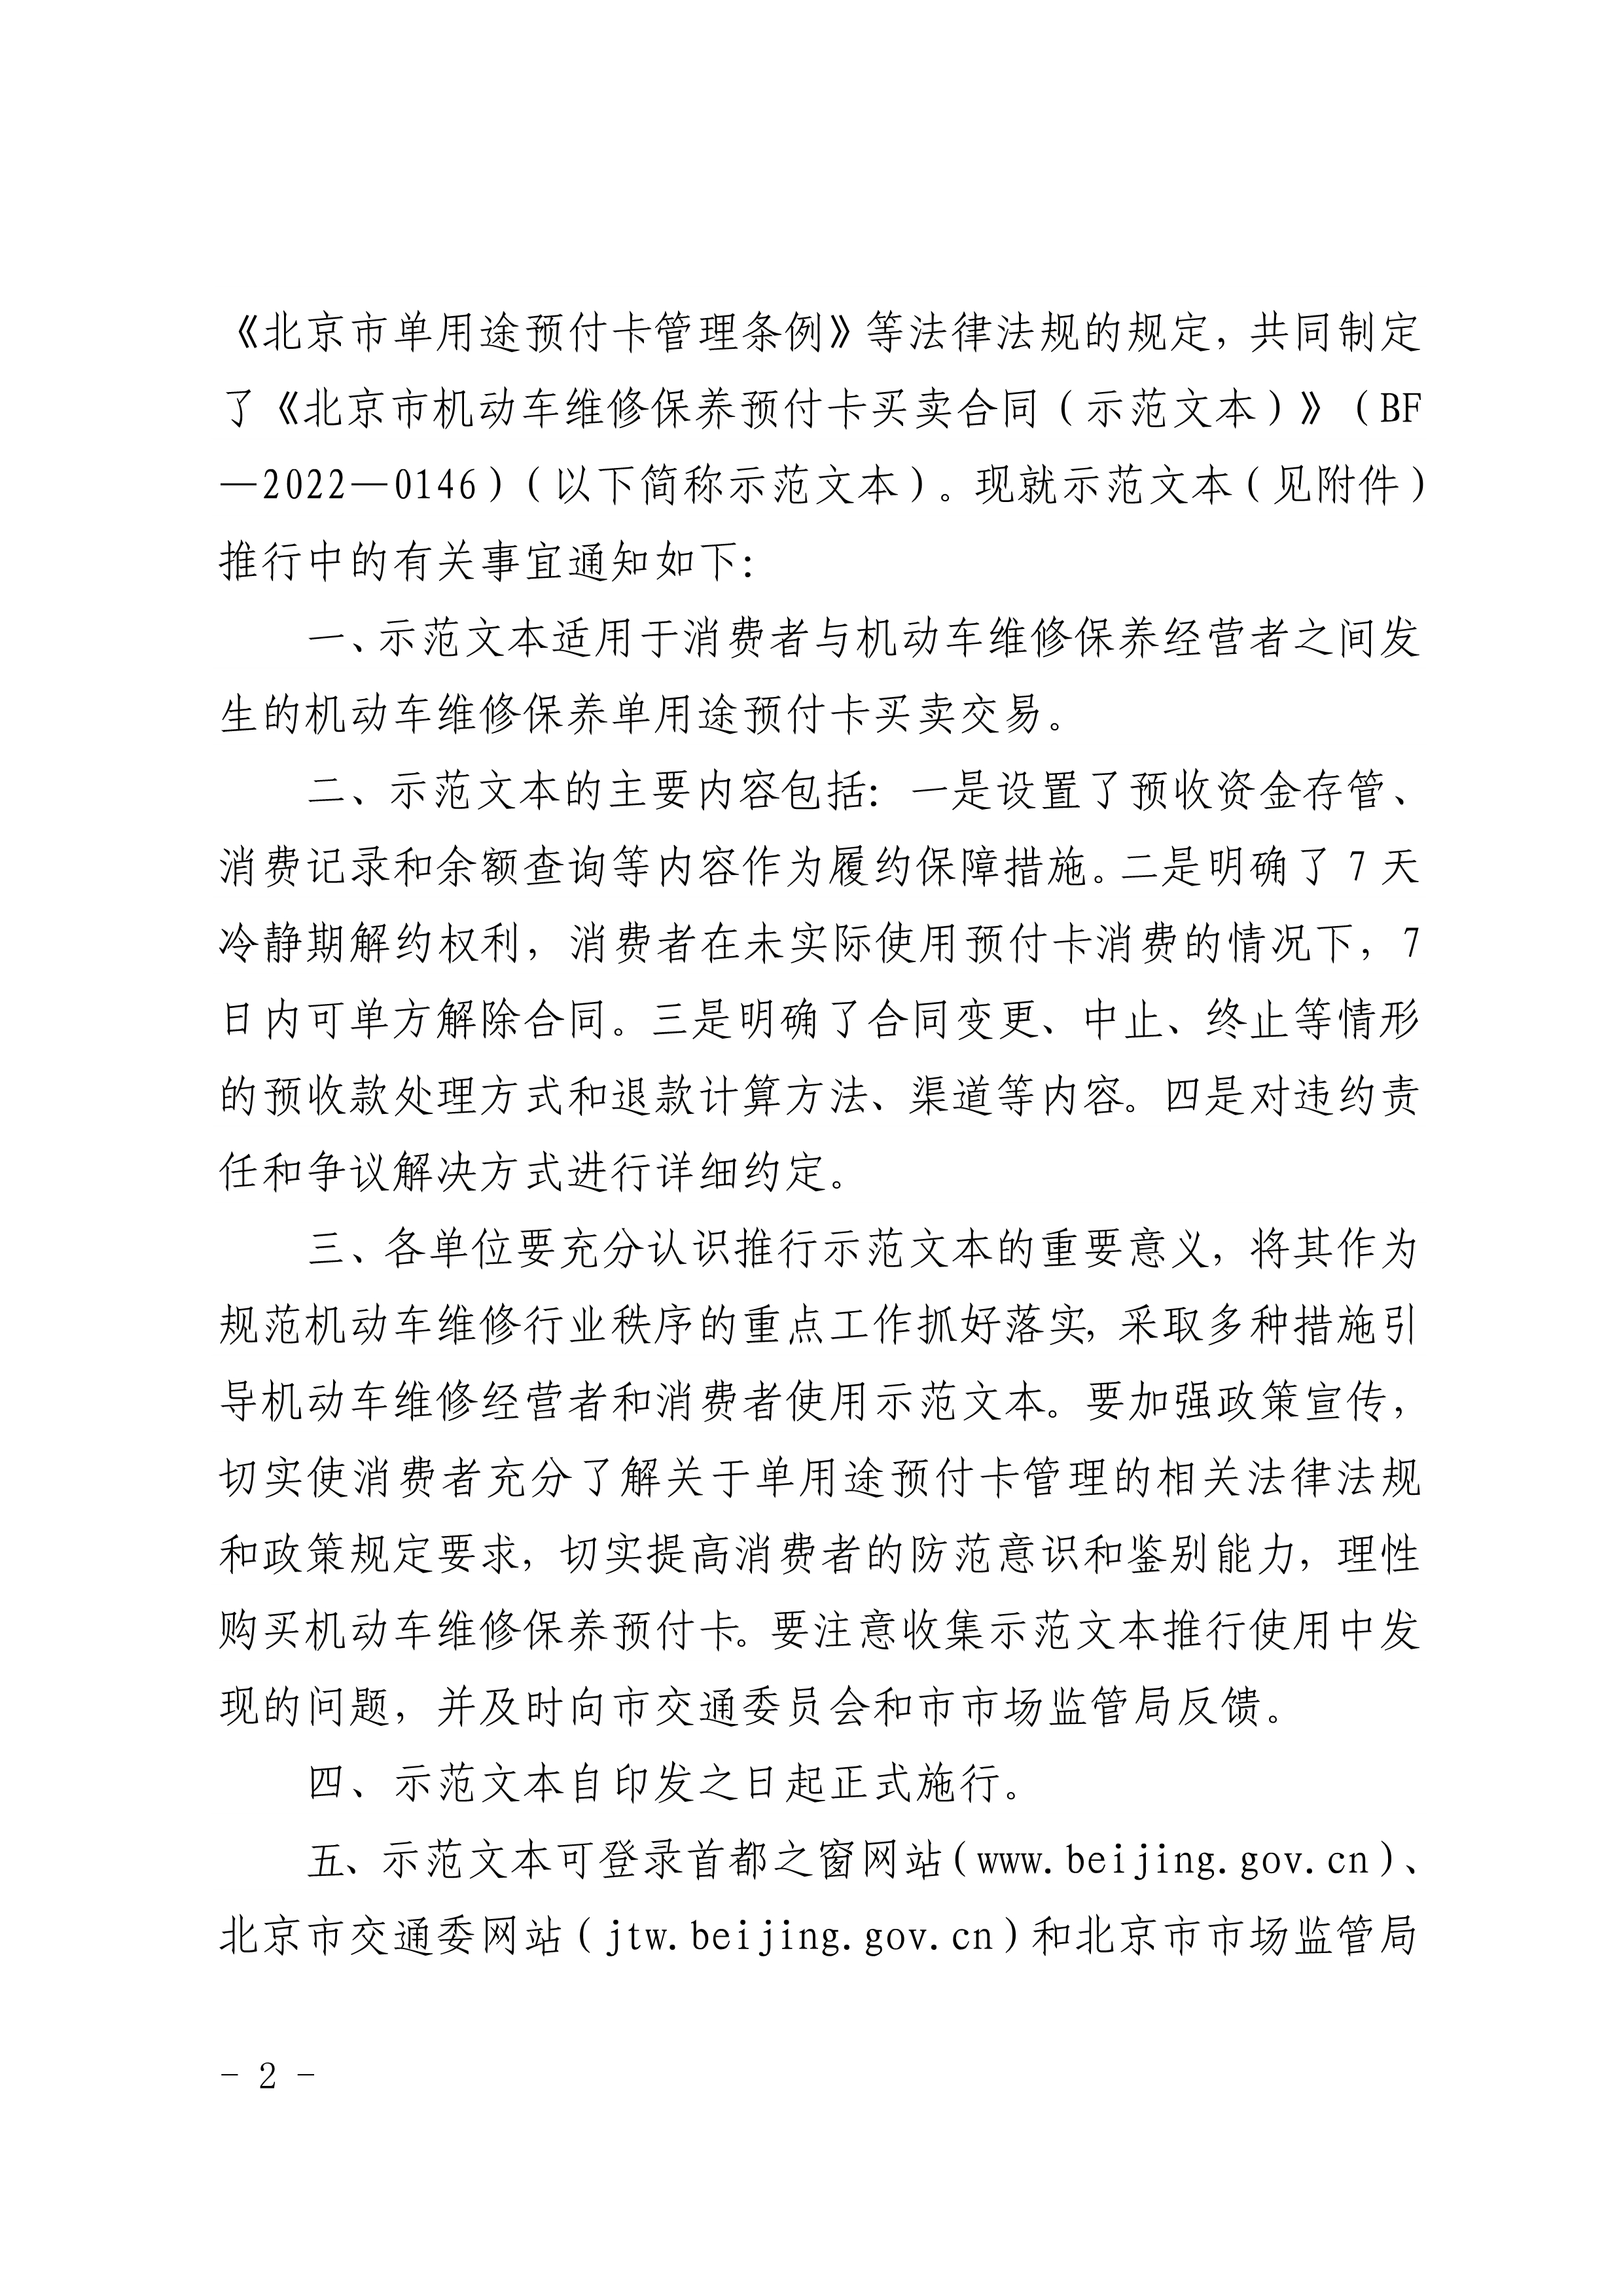 北京市交通委、北京市市场监督管理局关于推行北京市机动车维修保养预付卡买卖合同示（示范文本）的通知(图2)